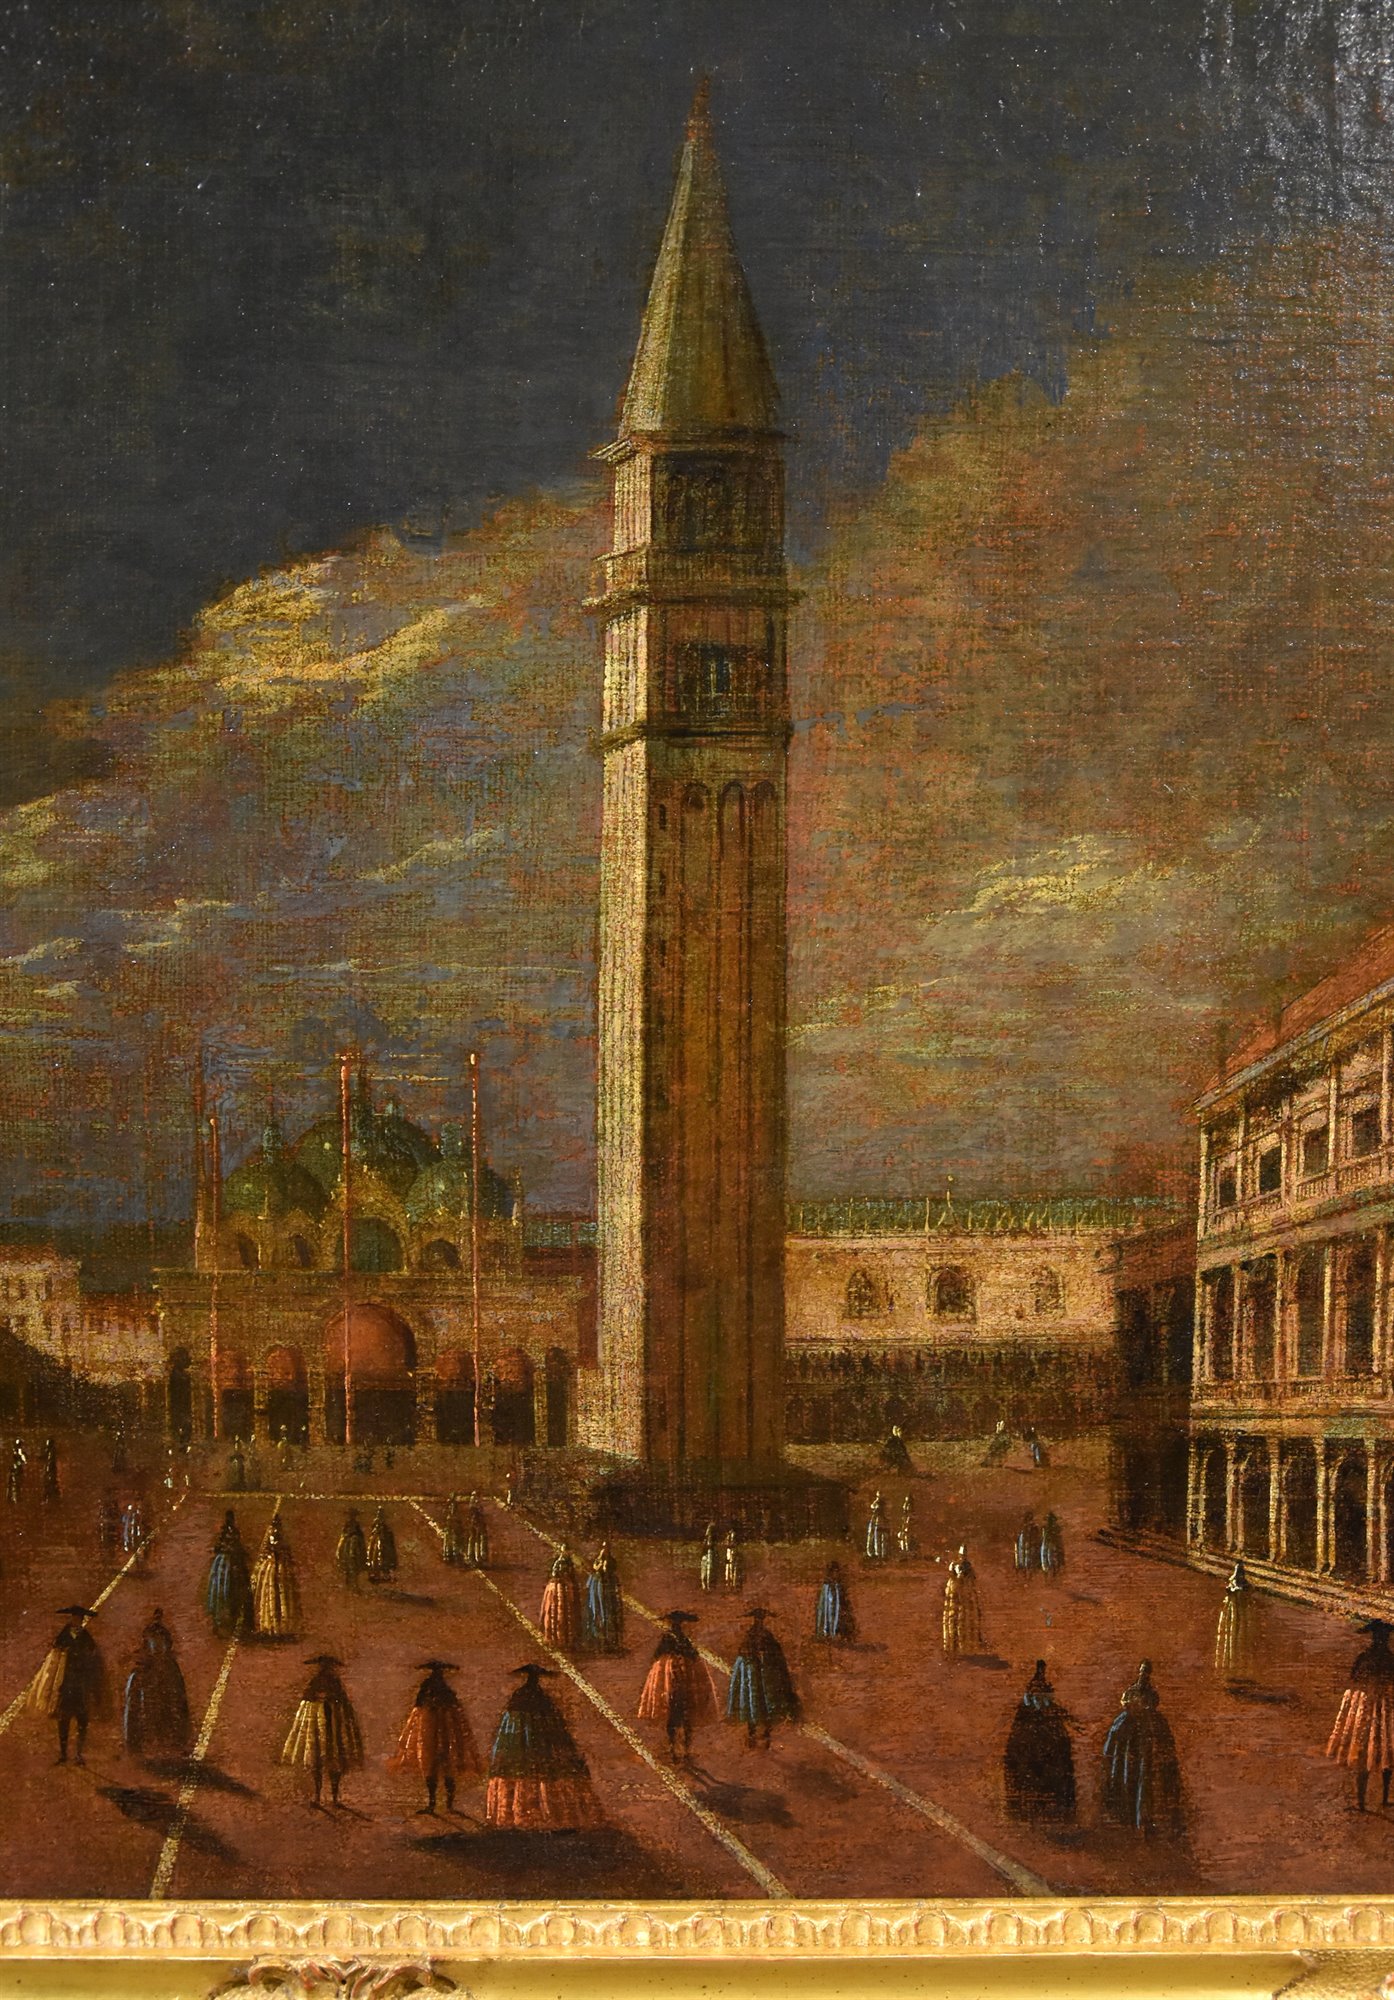 Veduta di Venezia con Piazza San Marco verso la Basilica